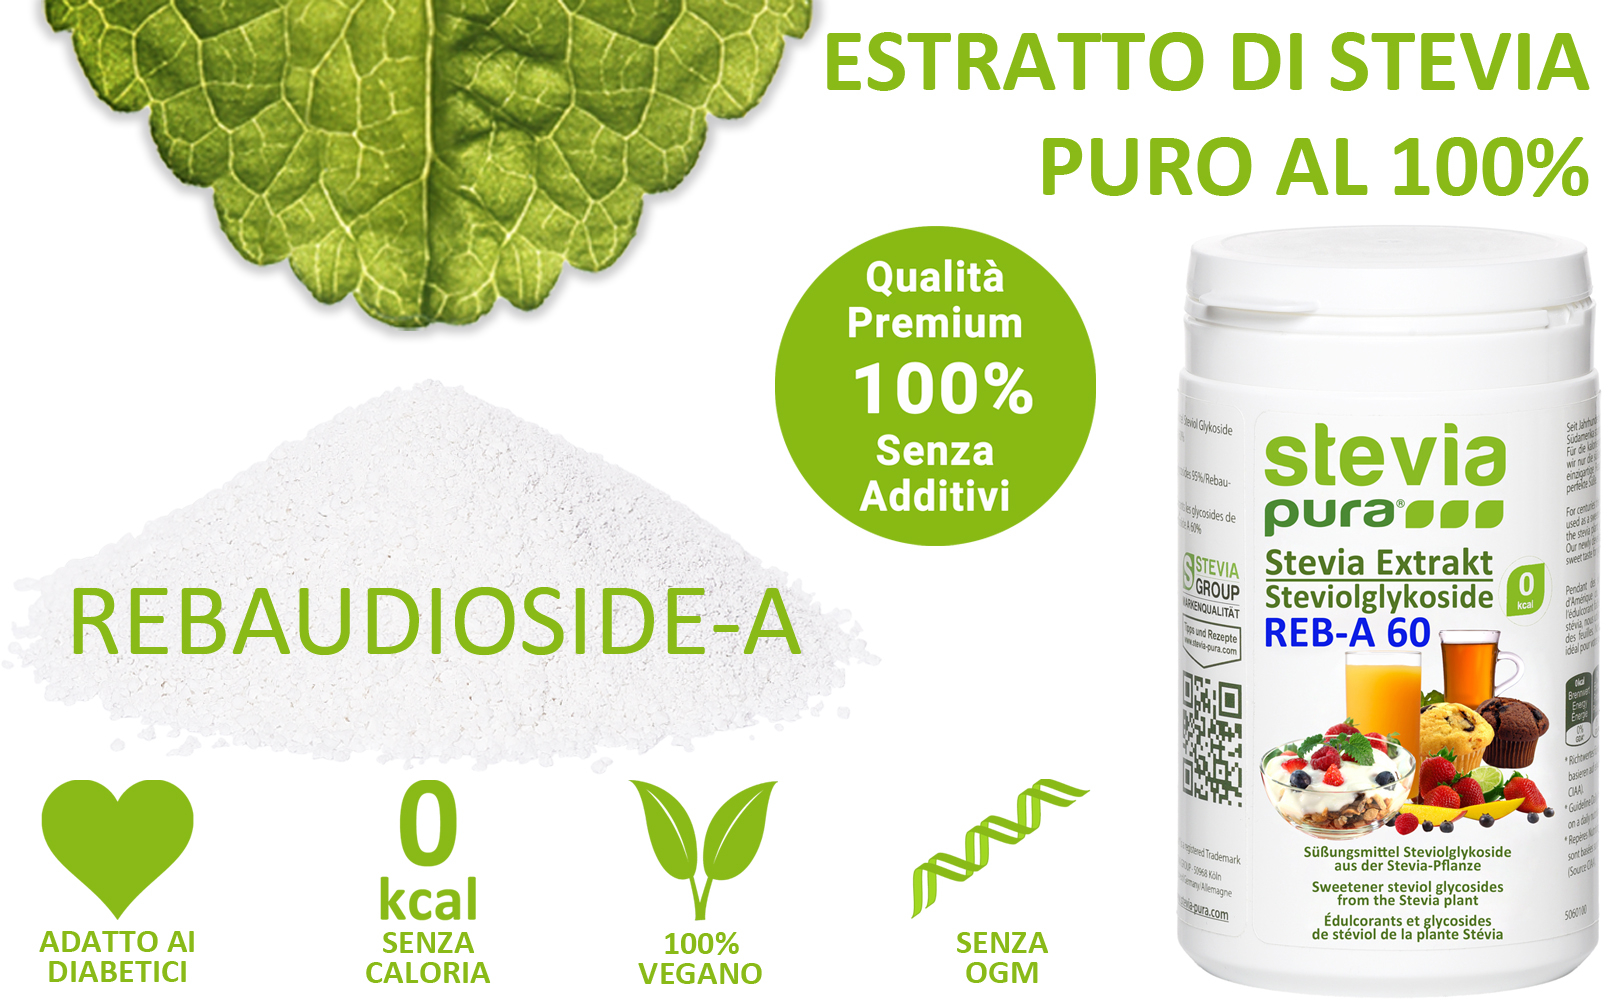 Acquistare Estratto di Stevia puro in Polvere Rebaudioside-A 60%